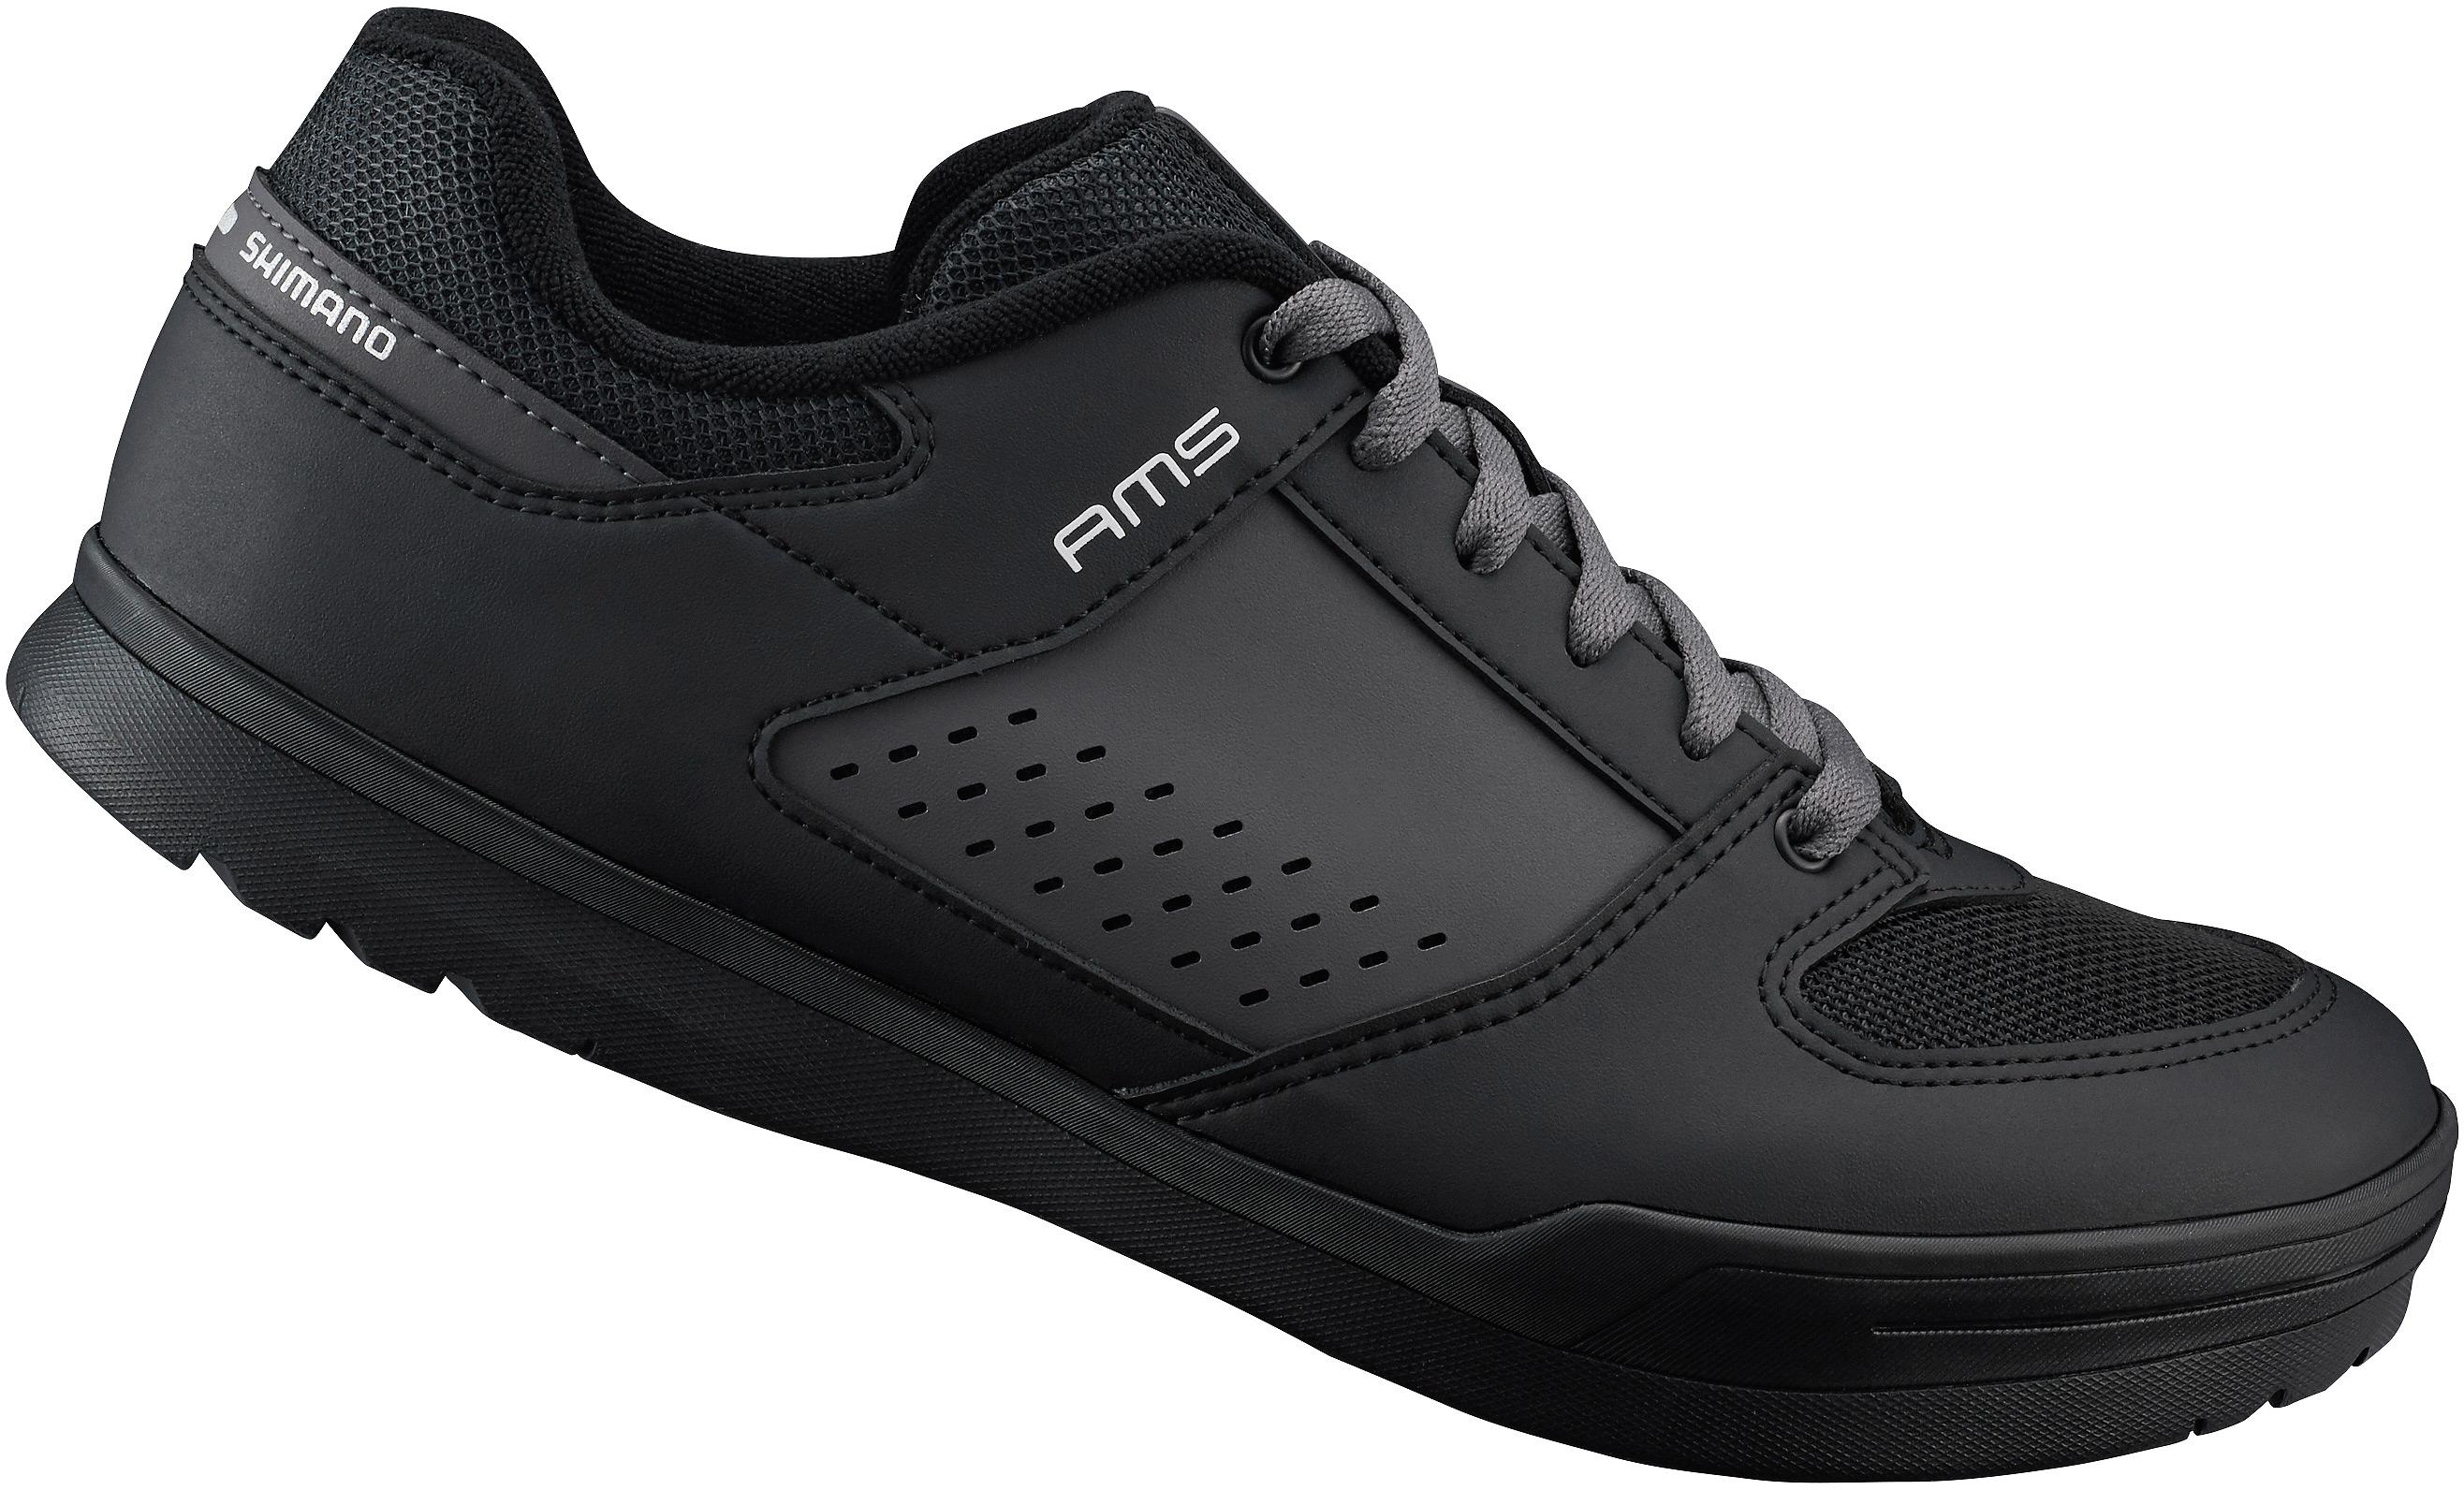 Am5 (Am501) Spd Shoes Black Size 40